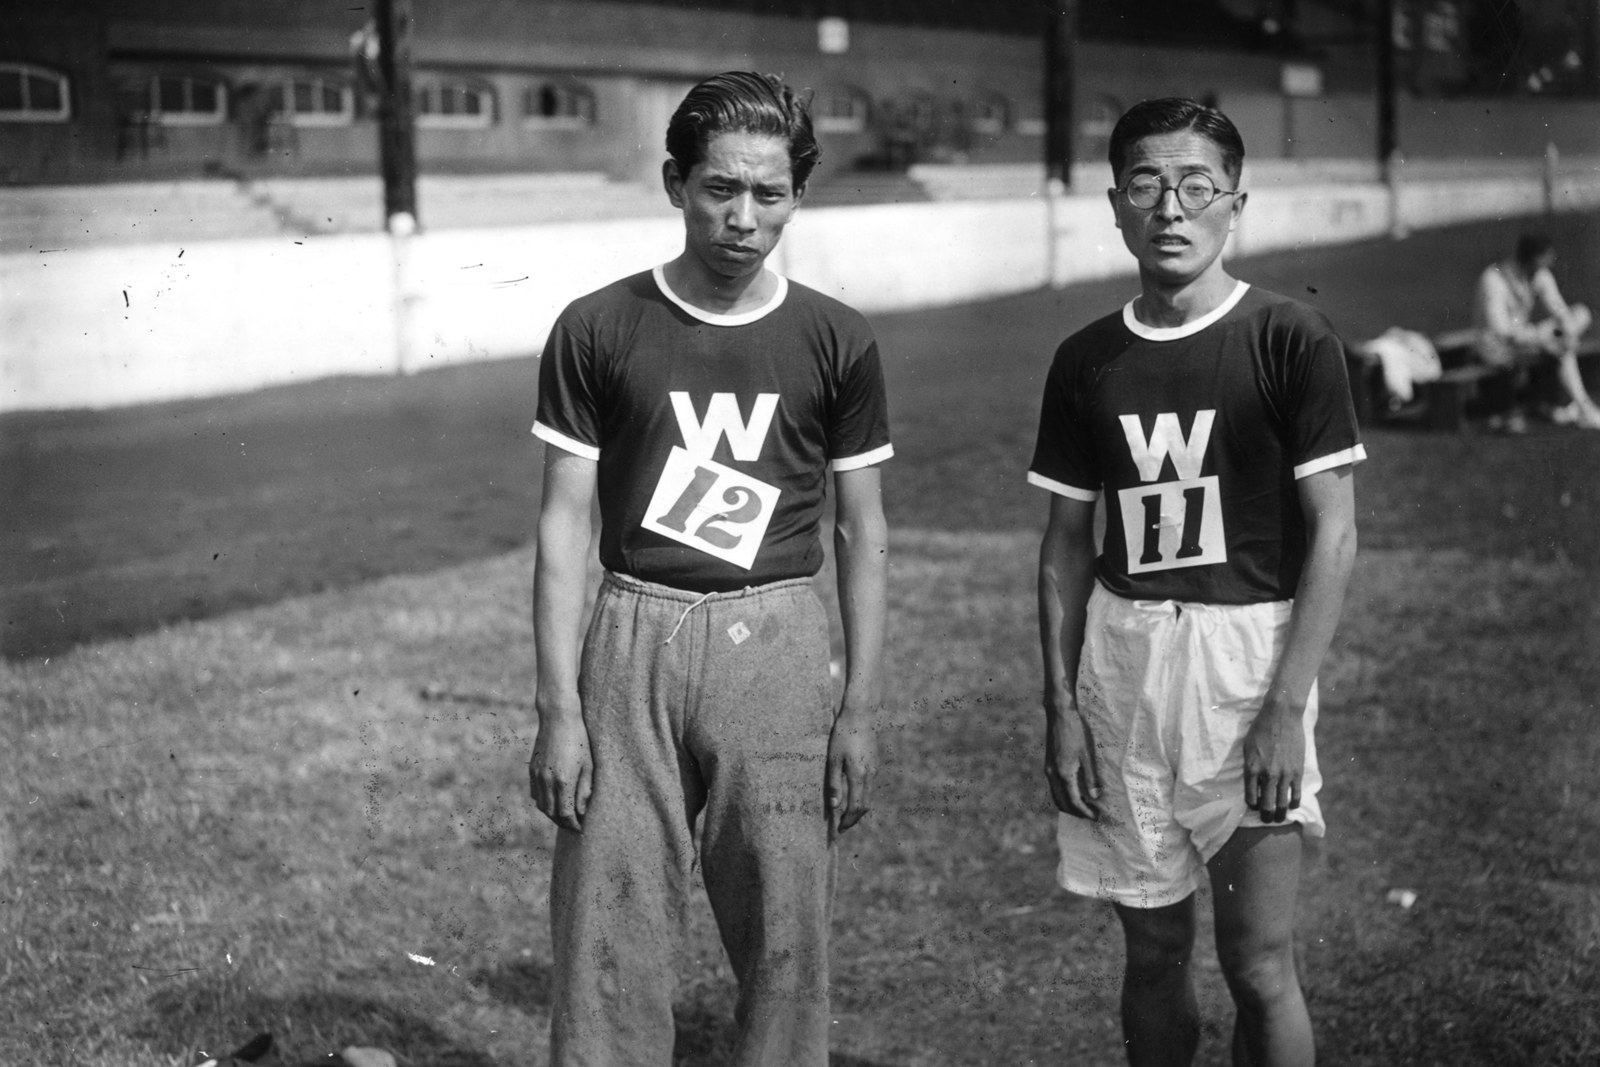 白黒時代のオリンピックを映した写真たちがエモい